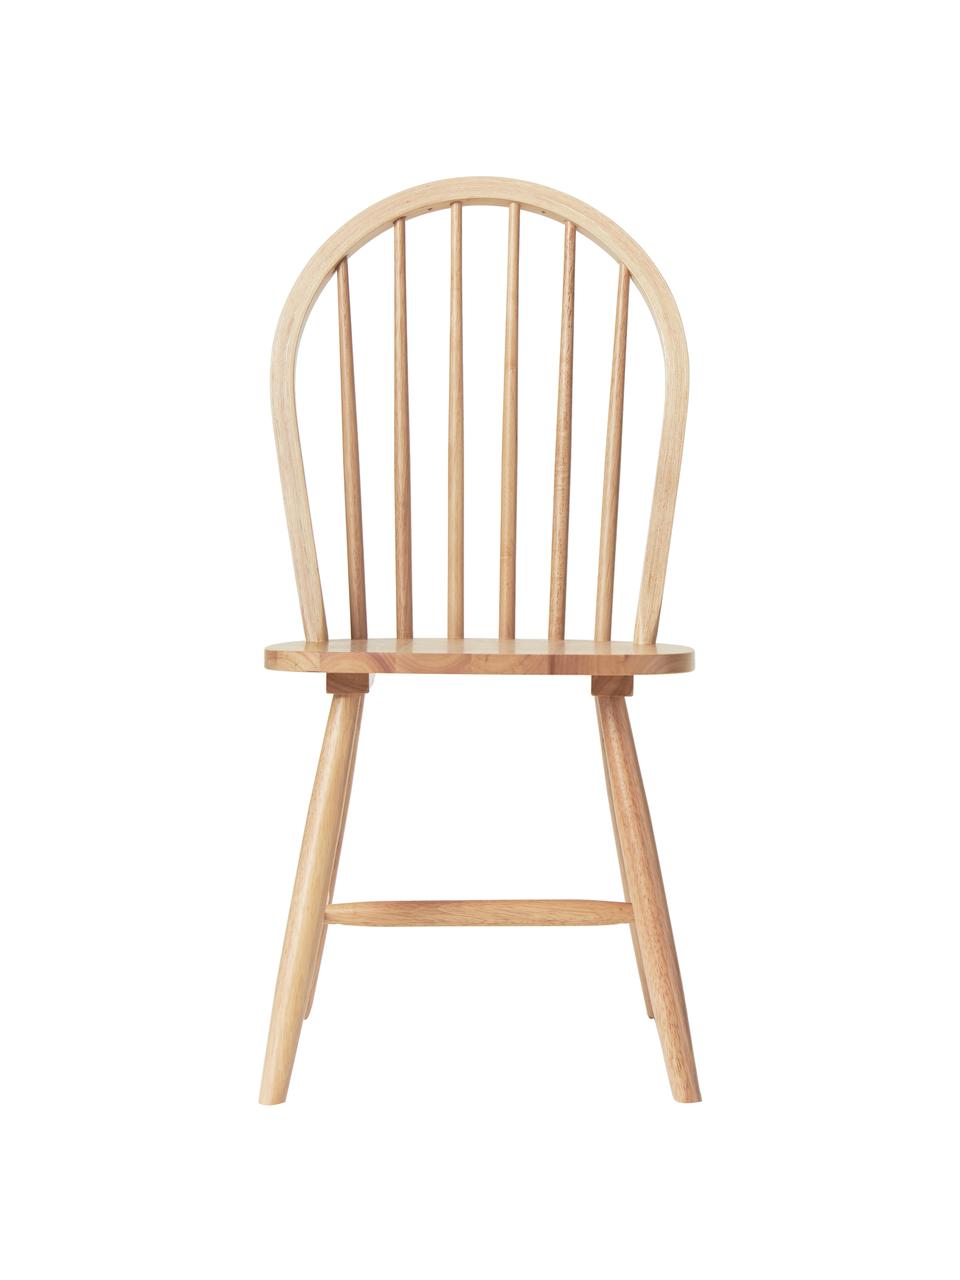 Windsor-Holzstühle Megan, 2 Stück, Kautschukholz, lackiert, Helles Holz, B 46 x T 51 cm